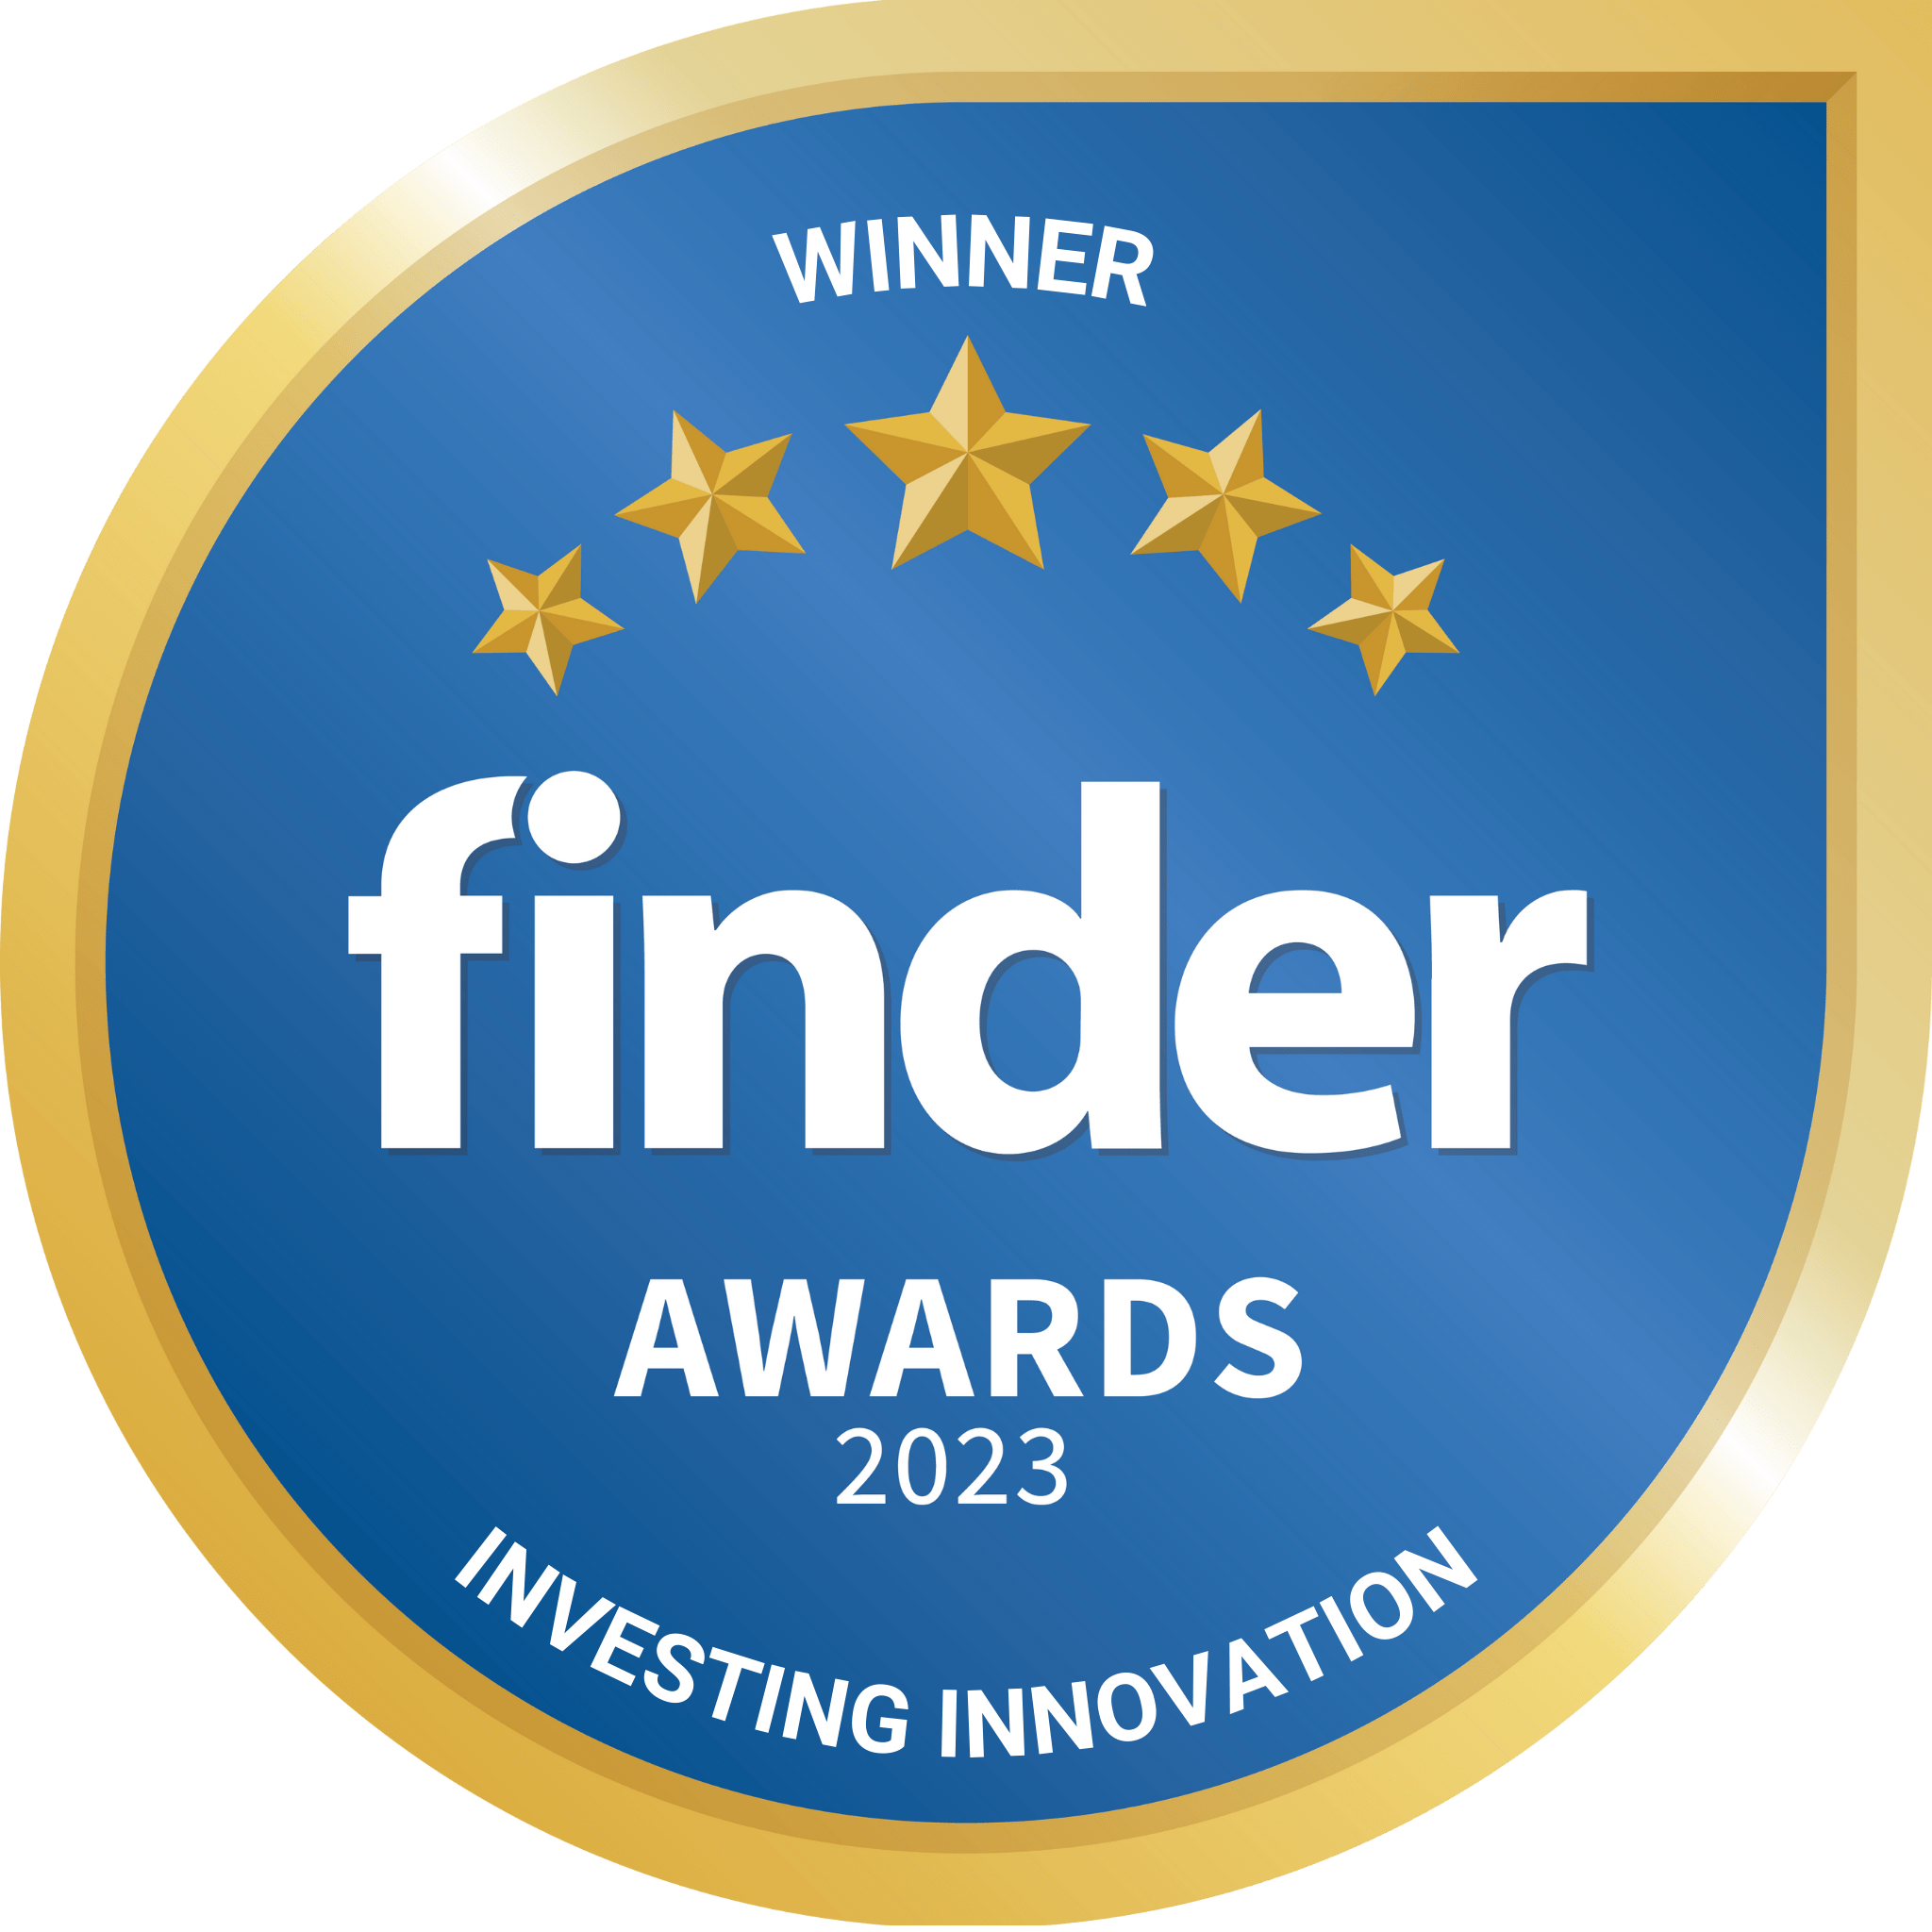 Winner Investing Innovation